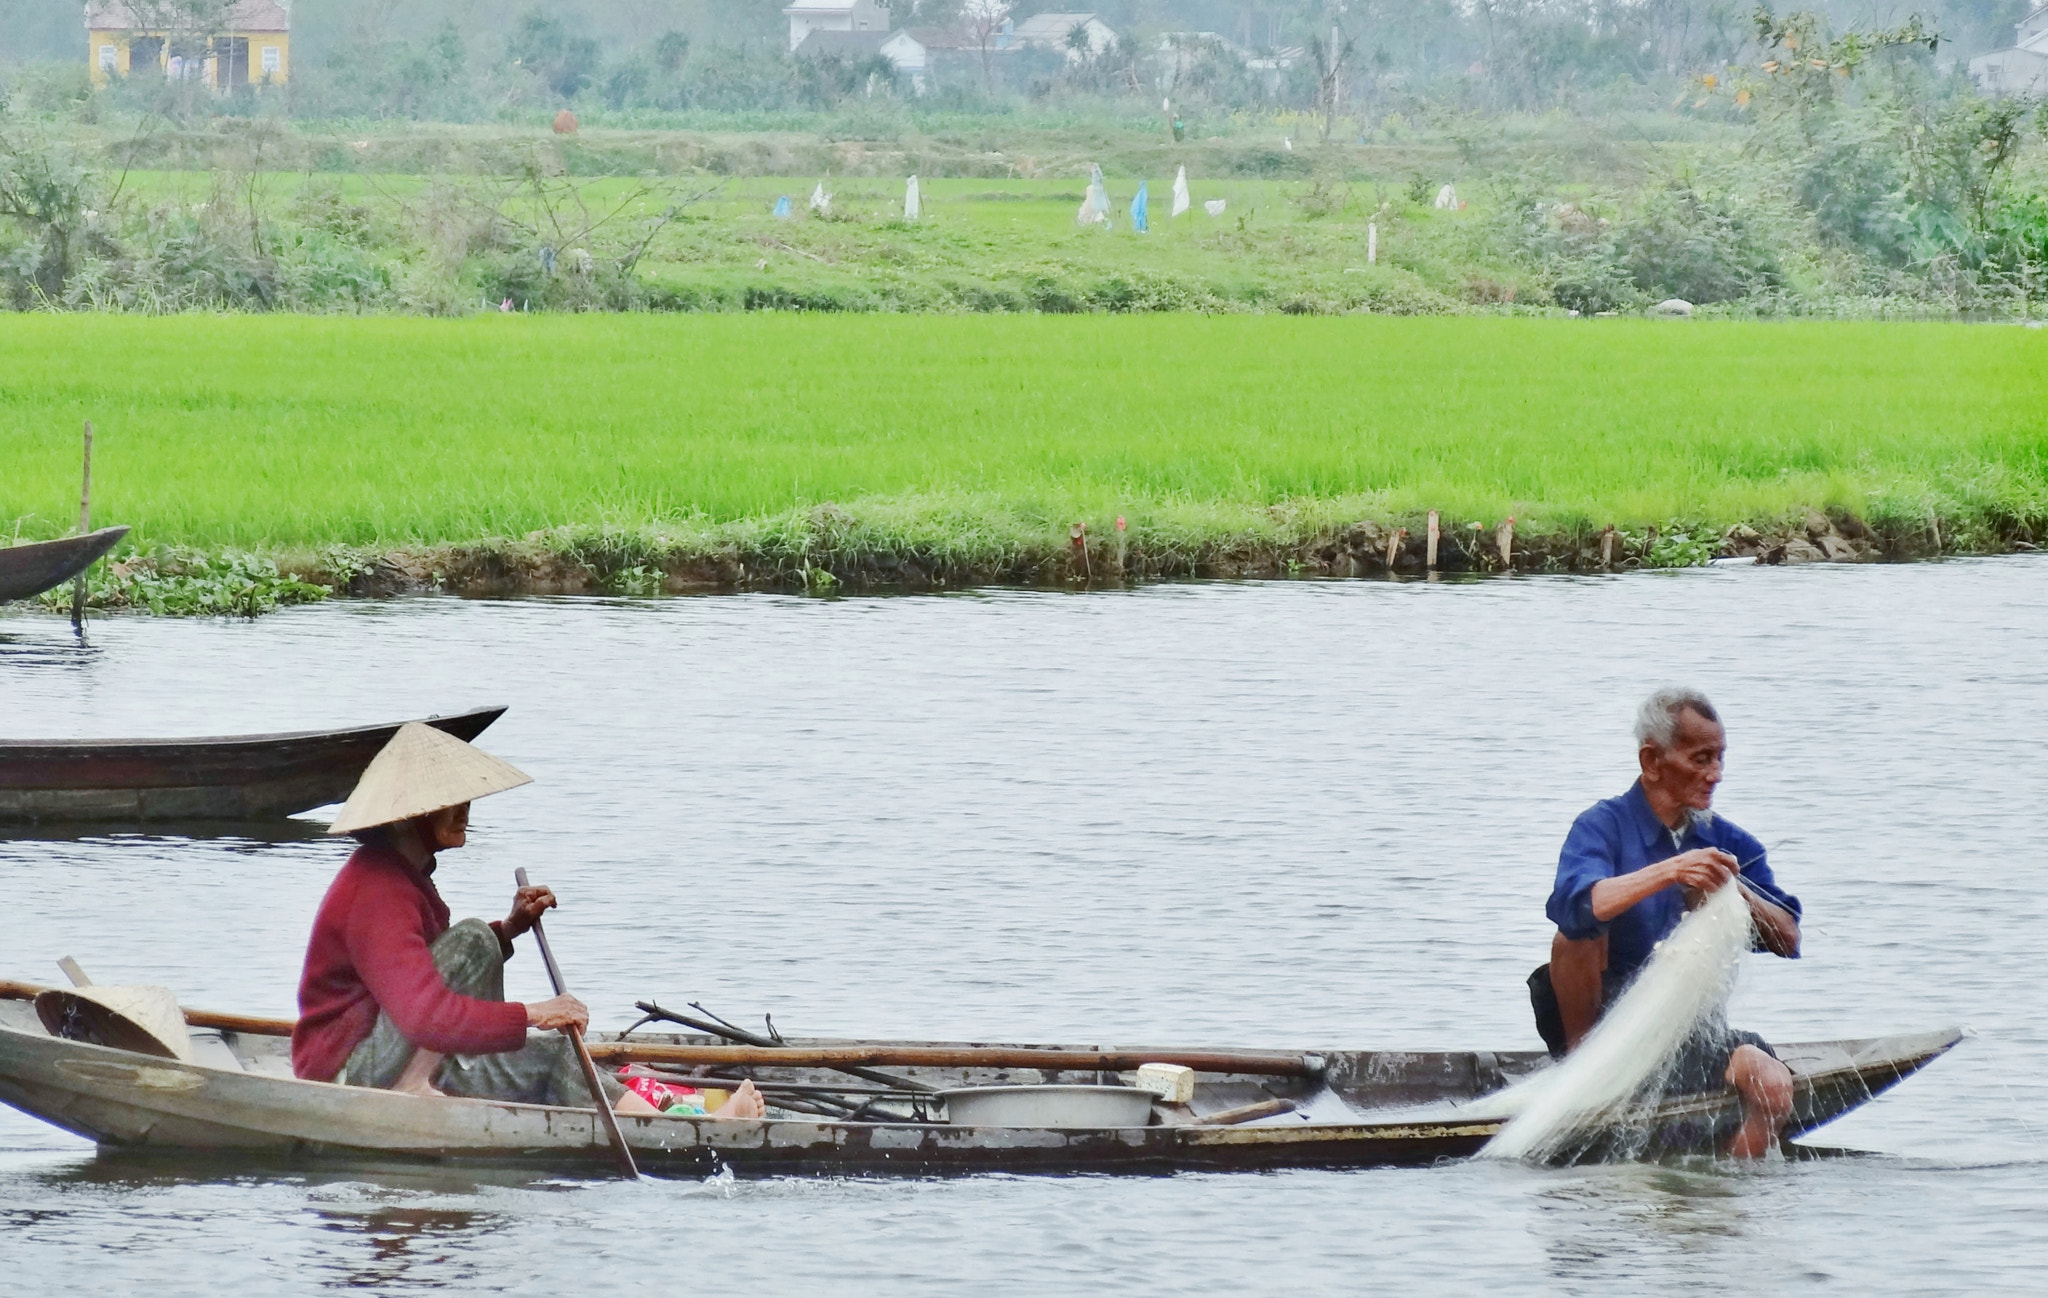 Sony Cyber-shot DSC-HX30V sample photo. Fishing in vietnam photography